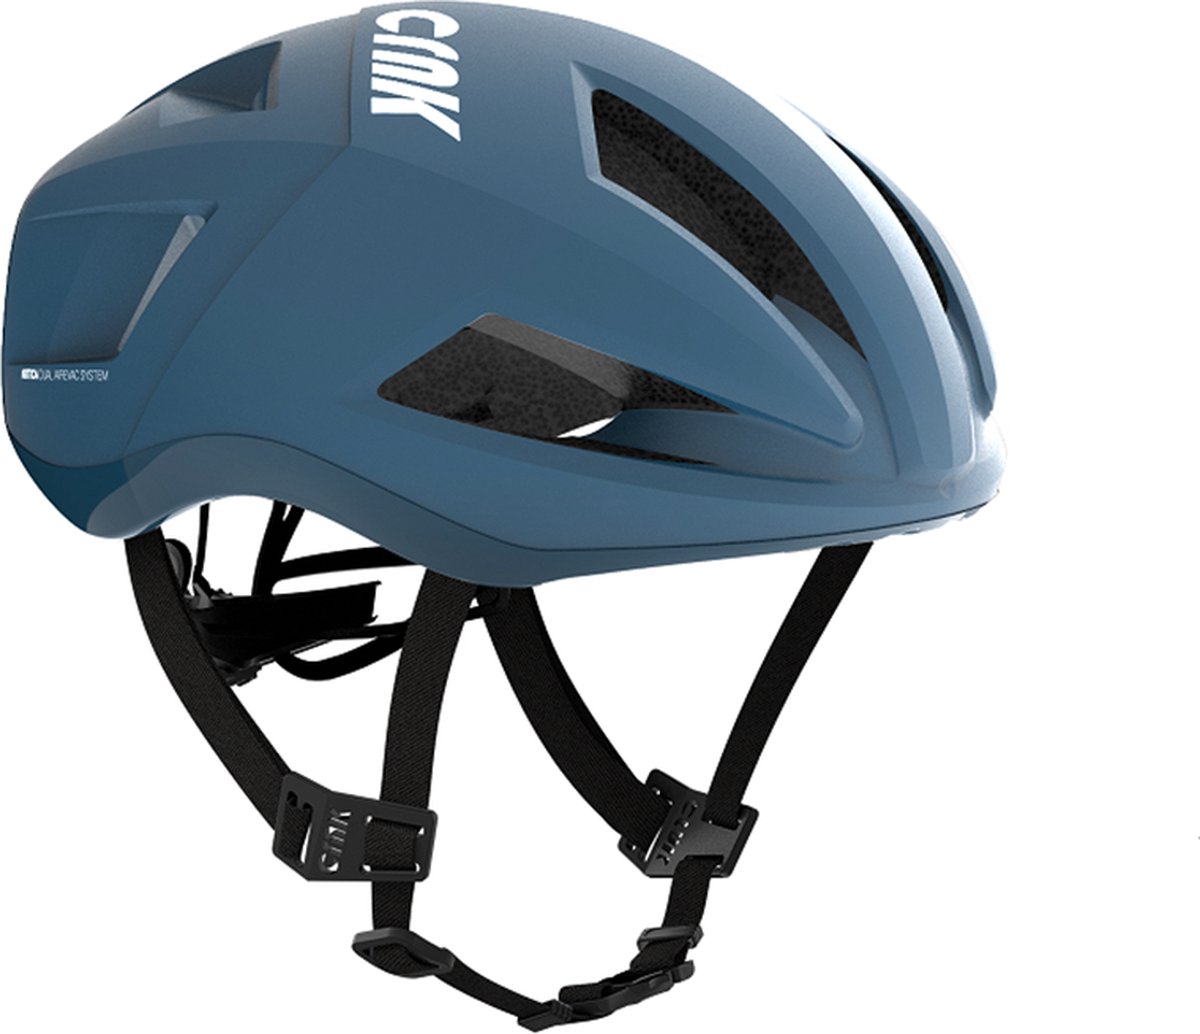 CRNK - Fietshelm Artica - CRNK Z Premium lijn - Comfortabele fietshelm door memory foam - Veilig door reflecterende strips - Blauw - Maat M